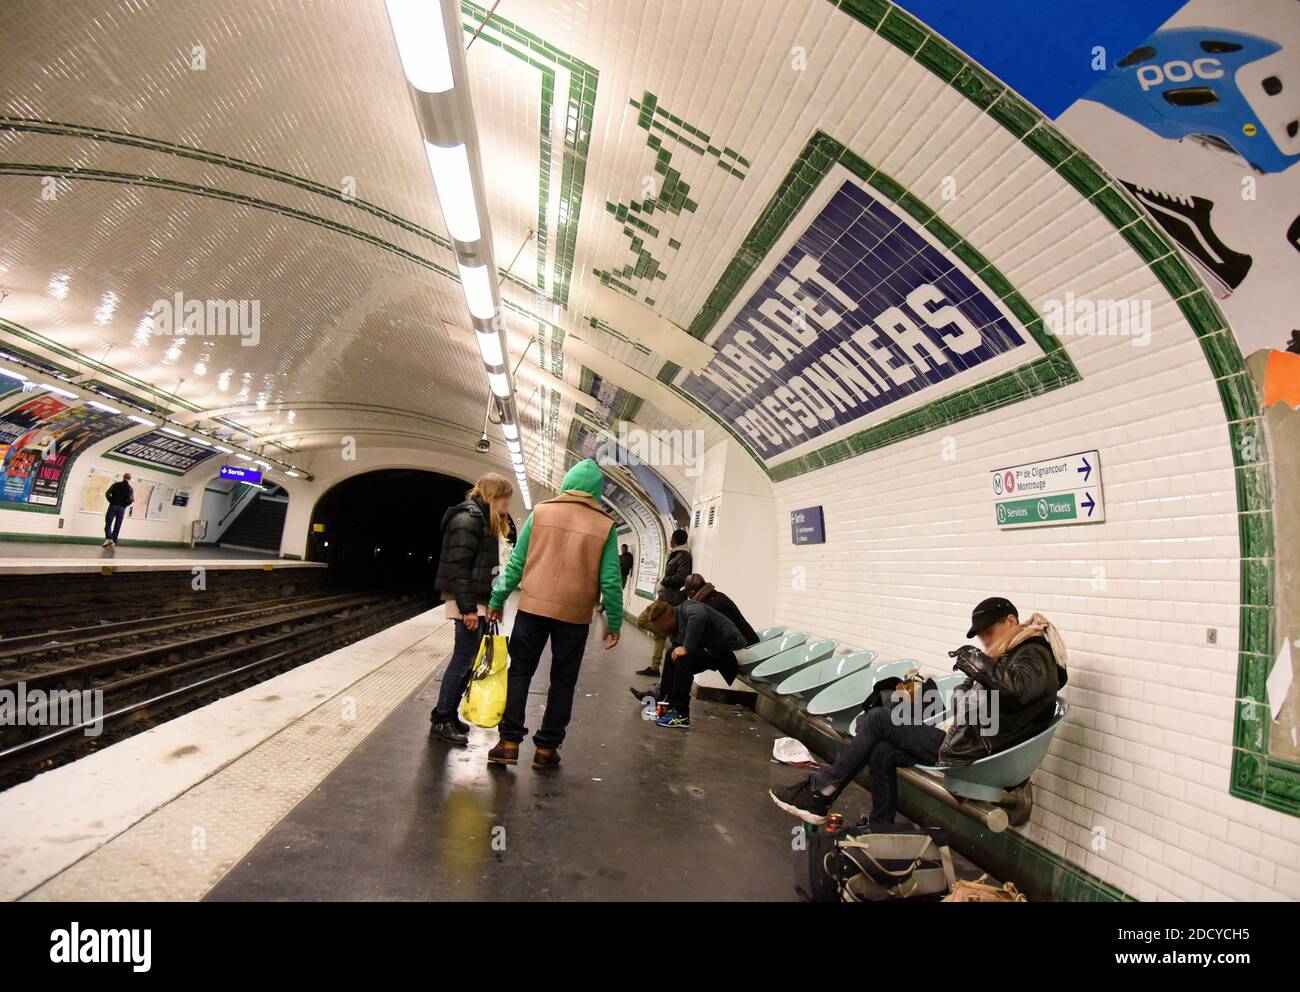 Das Phänomen der Riss Raucher in der Pariser Metro, die manchmal treibt Zugfahrer nicht am Bahnhof zu stoppen und beunruhigt Benutzer. Pariser Metrofahrer prangern die Unsicherheit in einigen Stationen an, insbesondere aufgrund der Anwesenheit von Crack-Rauchern und Drogenhändlern. 'Die U-Bahn-Zombies', wie Le Parisien es vor ein paar Tagen nannte. Die Tageszeitung zeigt Szenen von Junkies, die ihre Risspfeife am Kai unter den staunenden und verängstigten Augen des Gebrauchs zünden. Januar 20, 2018. Foto von Alain Apaydin/ABACAPRESS.COM Stockfoto